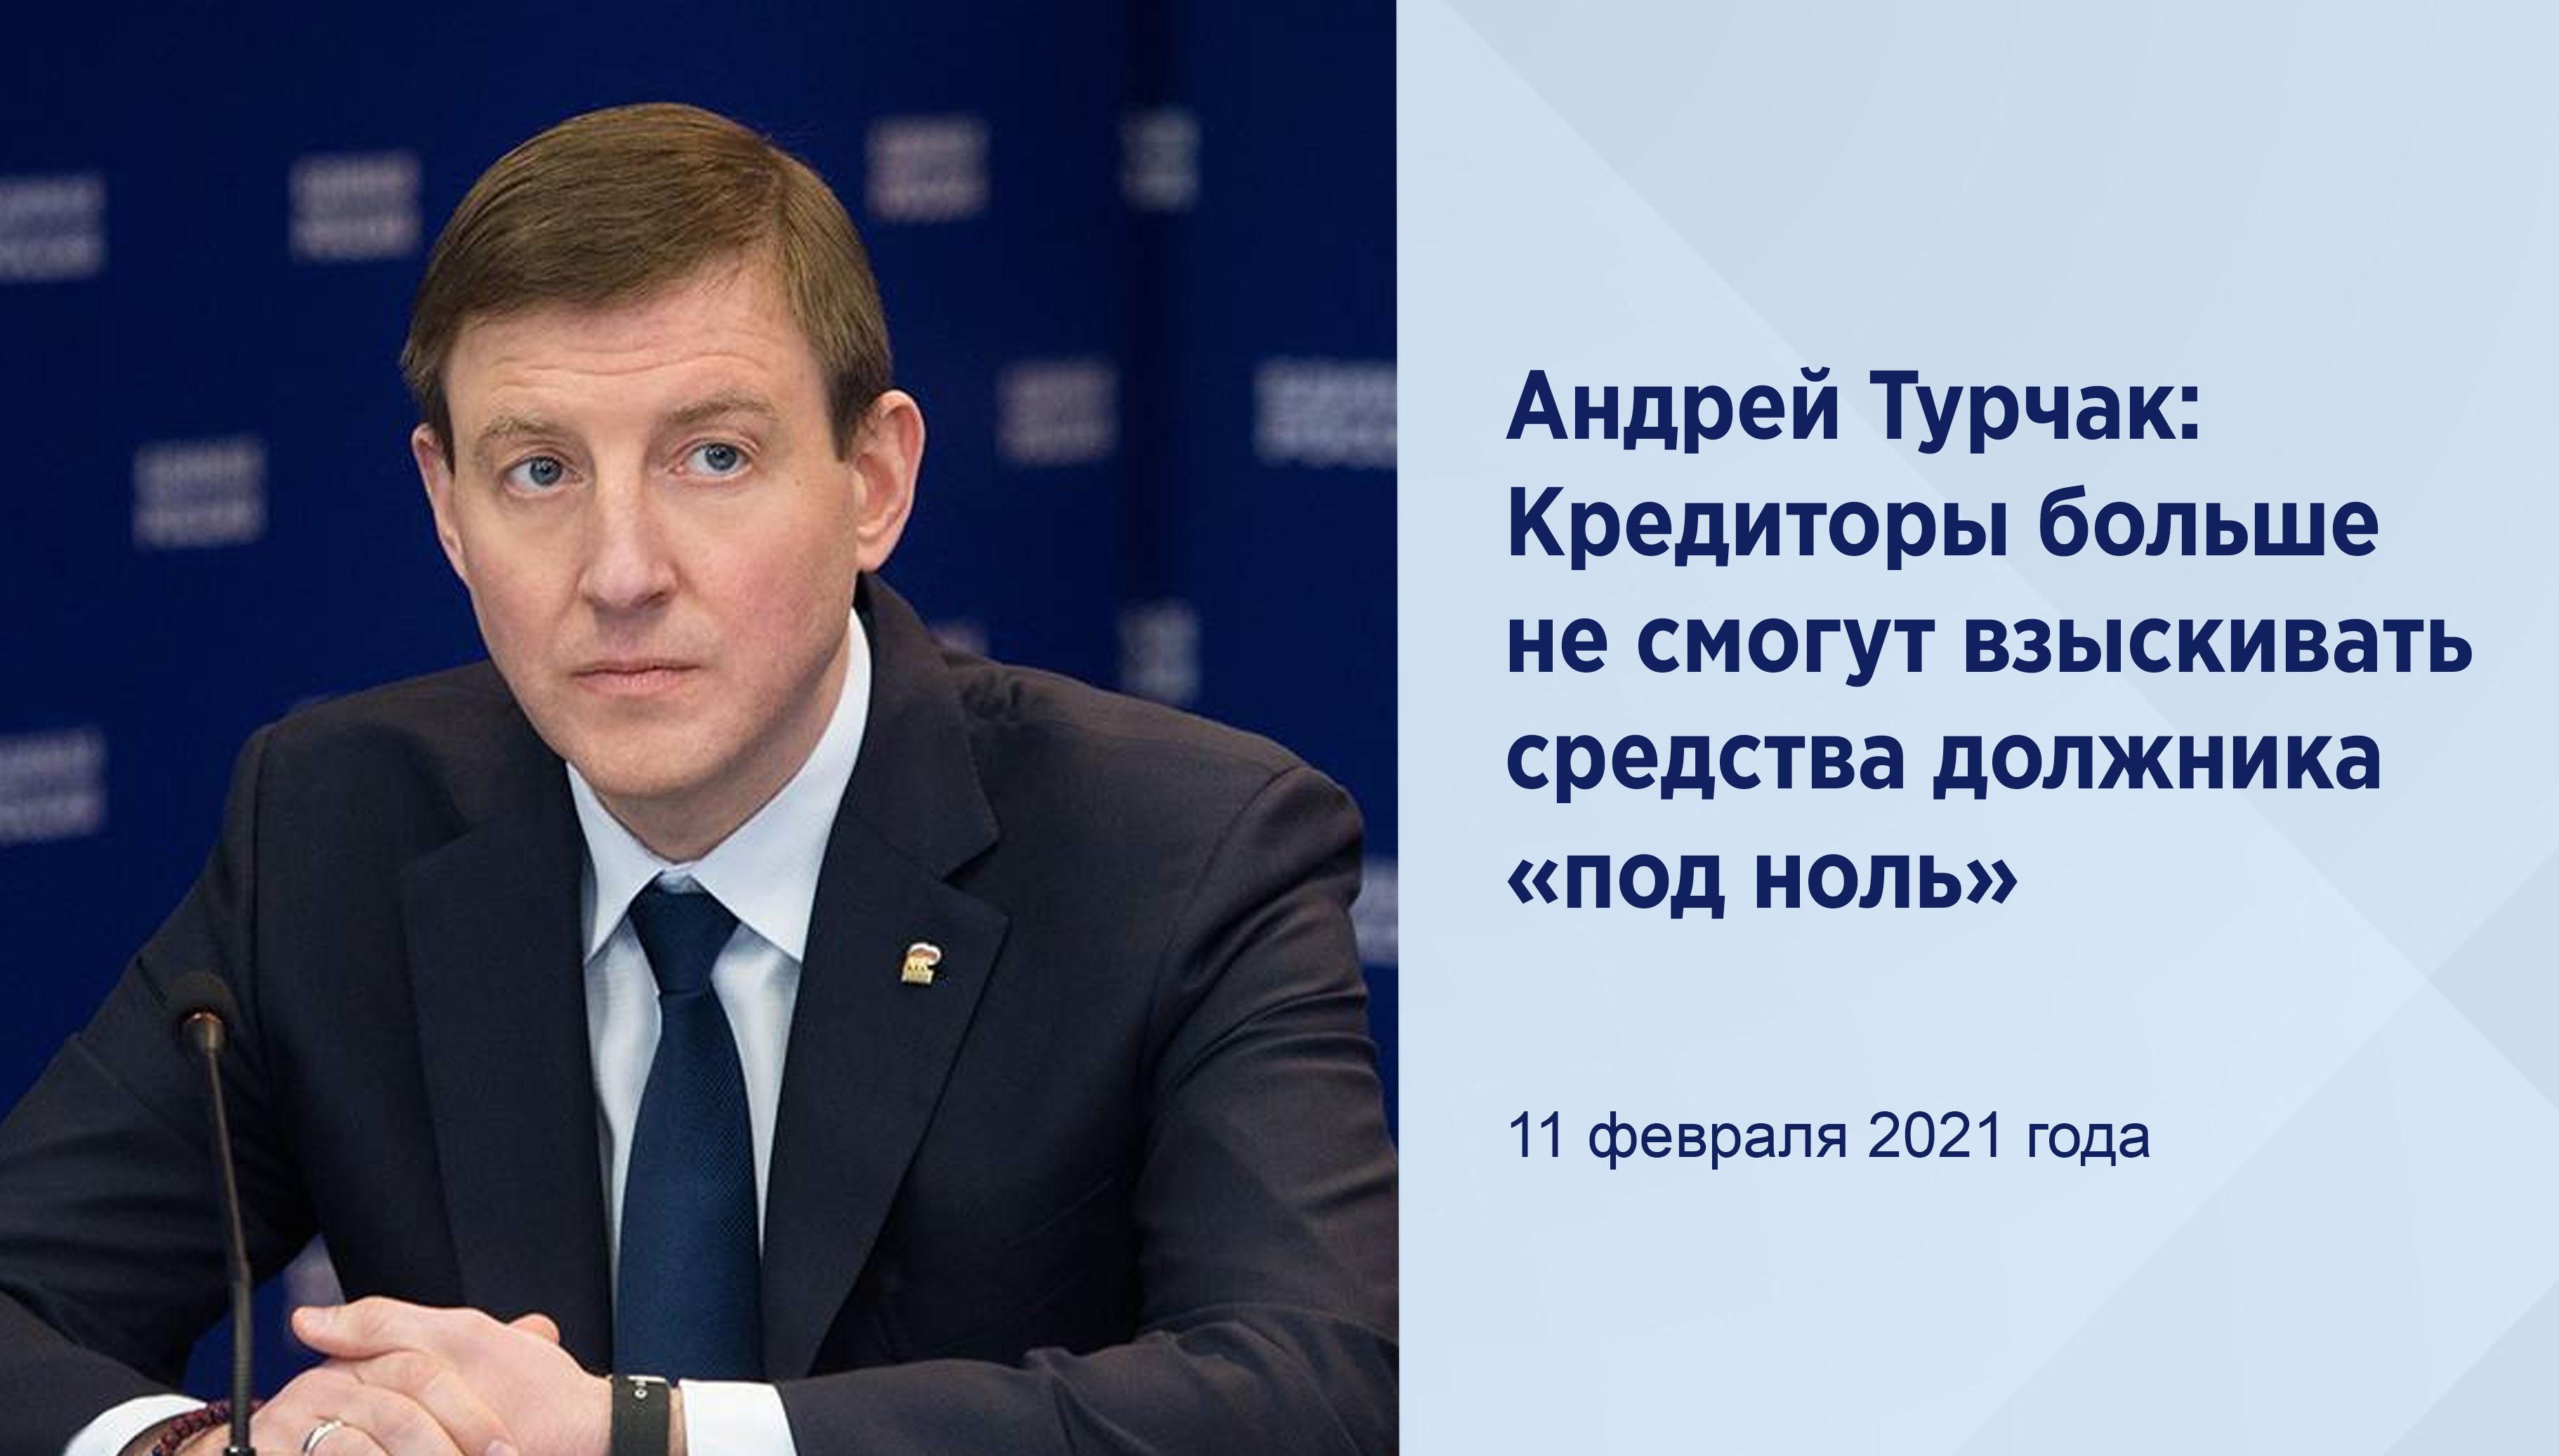 Андрей Турчак: Кредиторы больше не
смогут взыскивать средства должника
«под ноль»